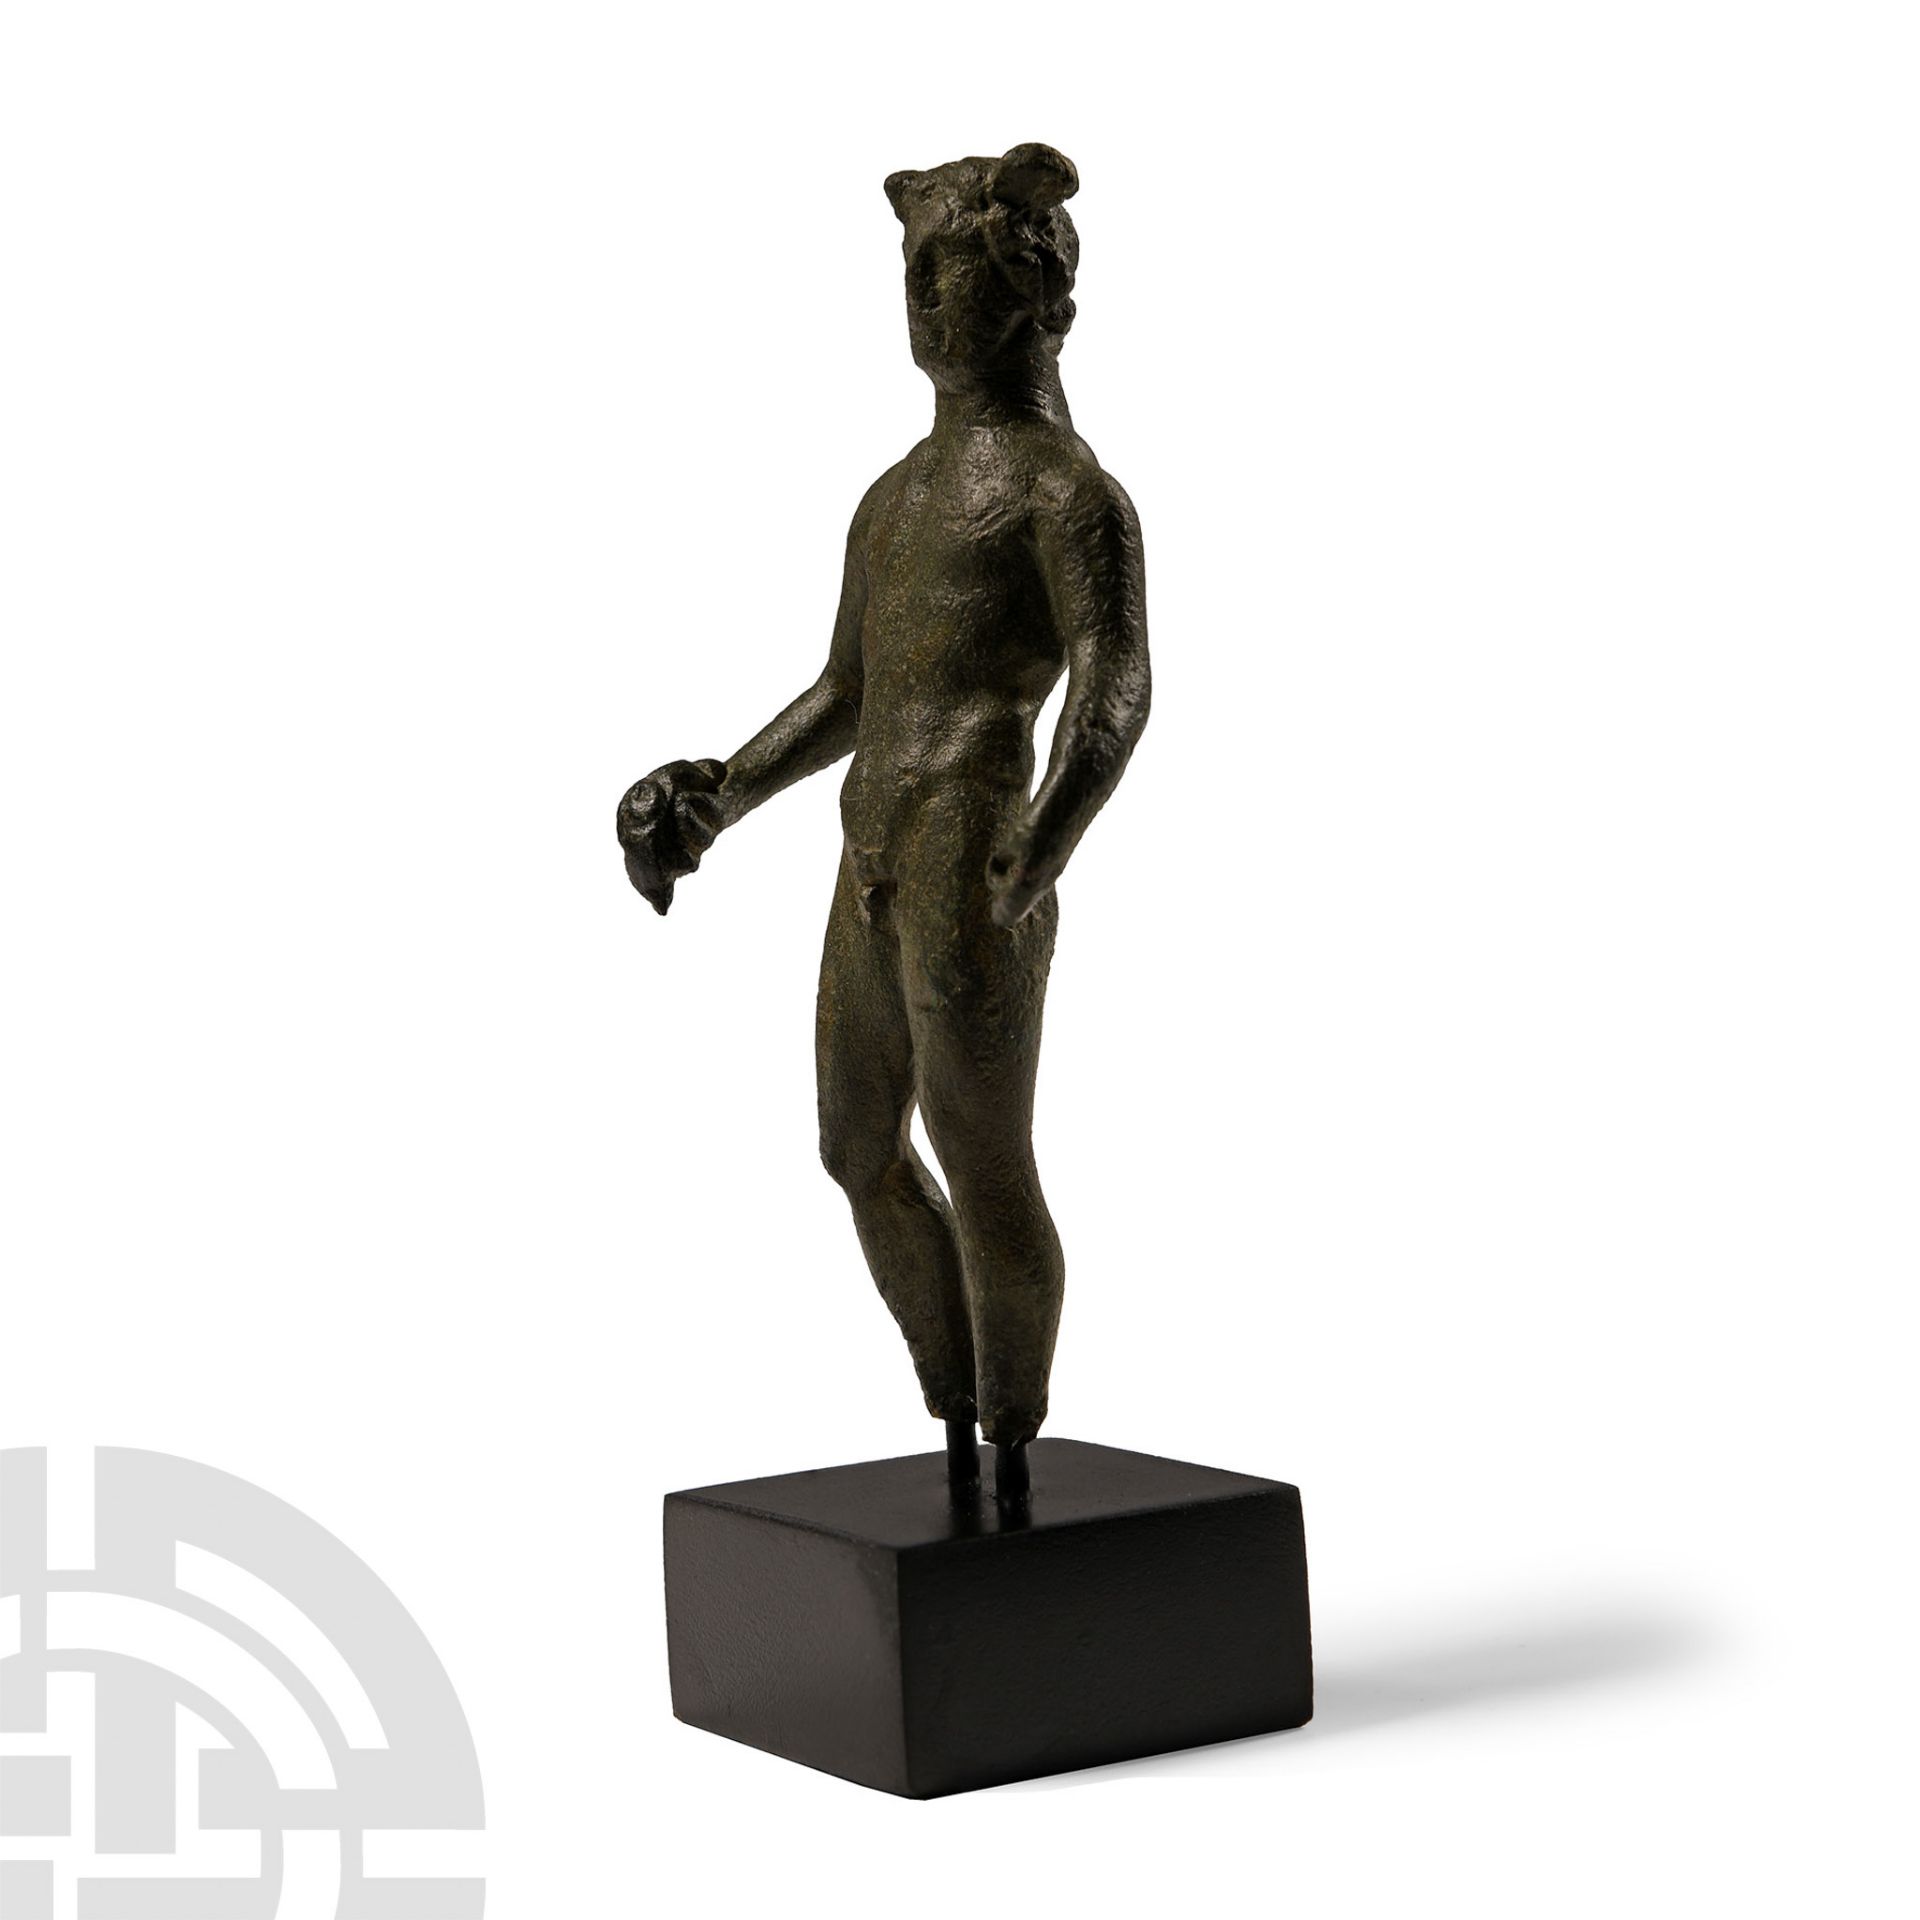 Published 'The Brixton Deverill' Romano-British Bronze Mercury Statuette